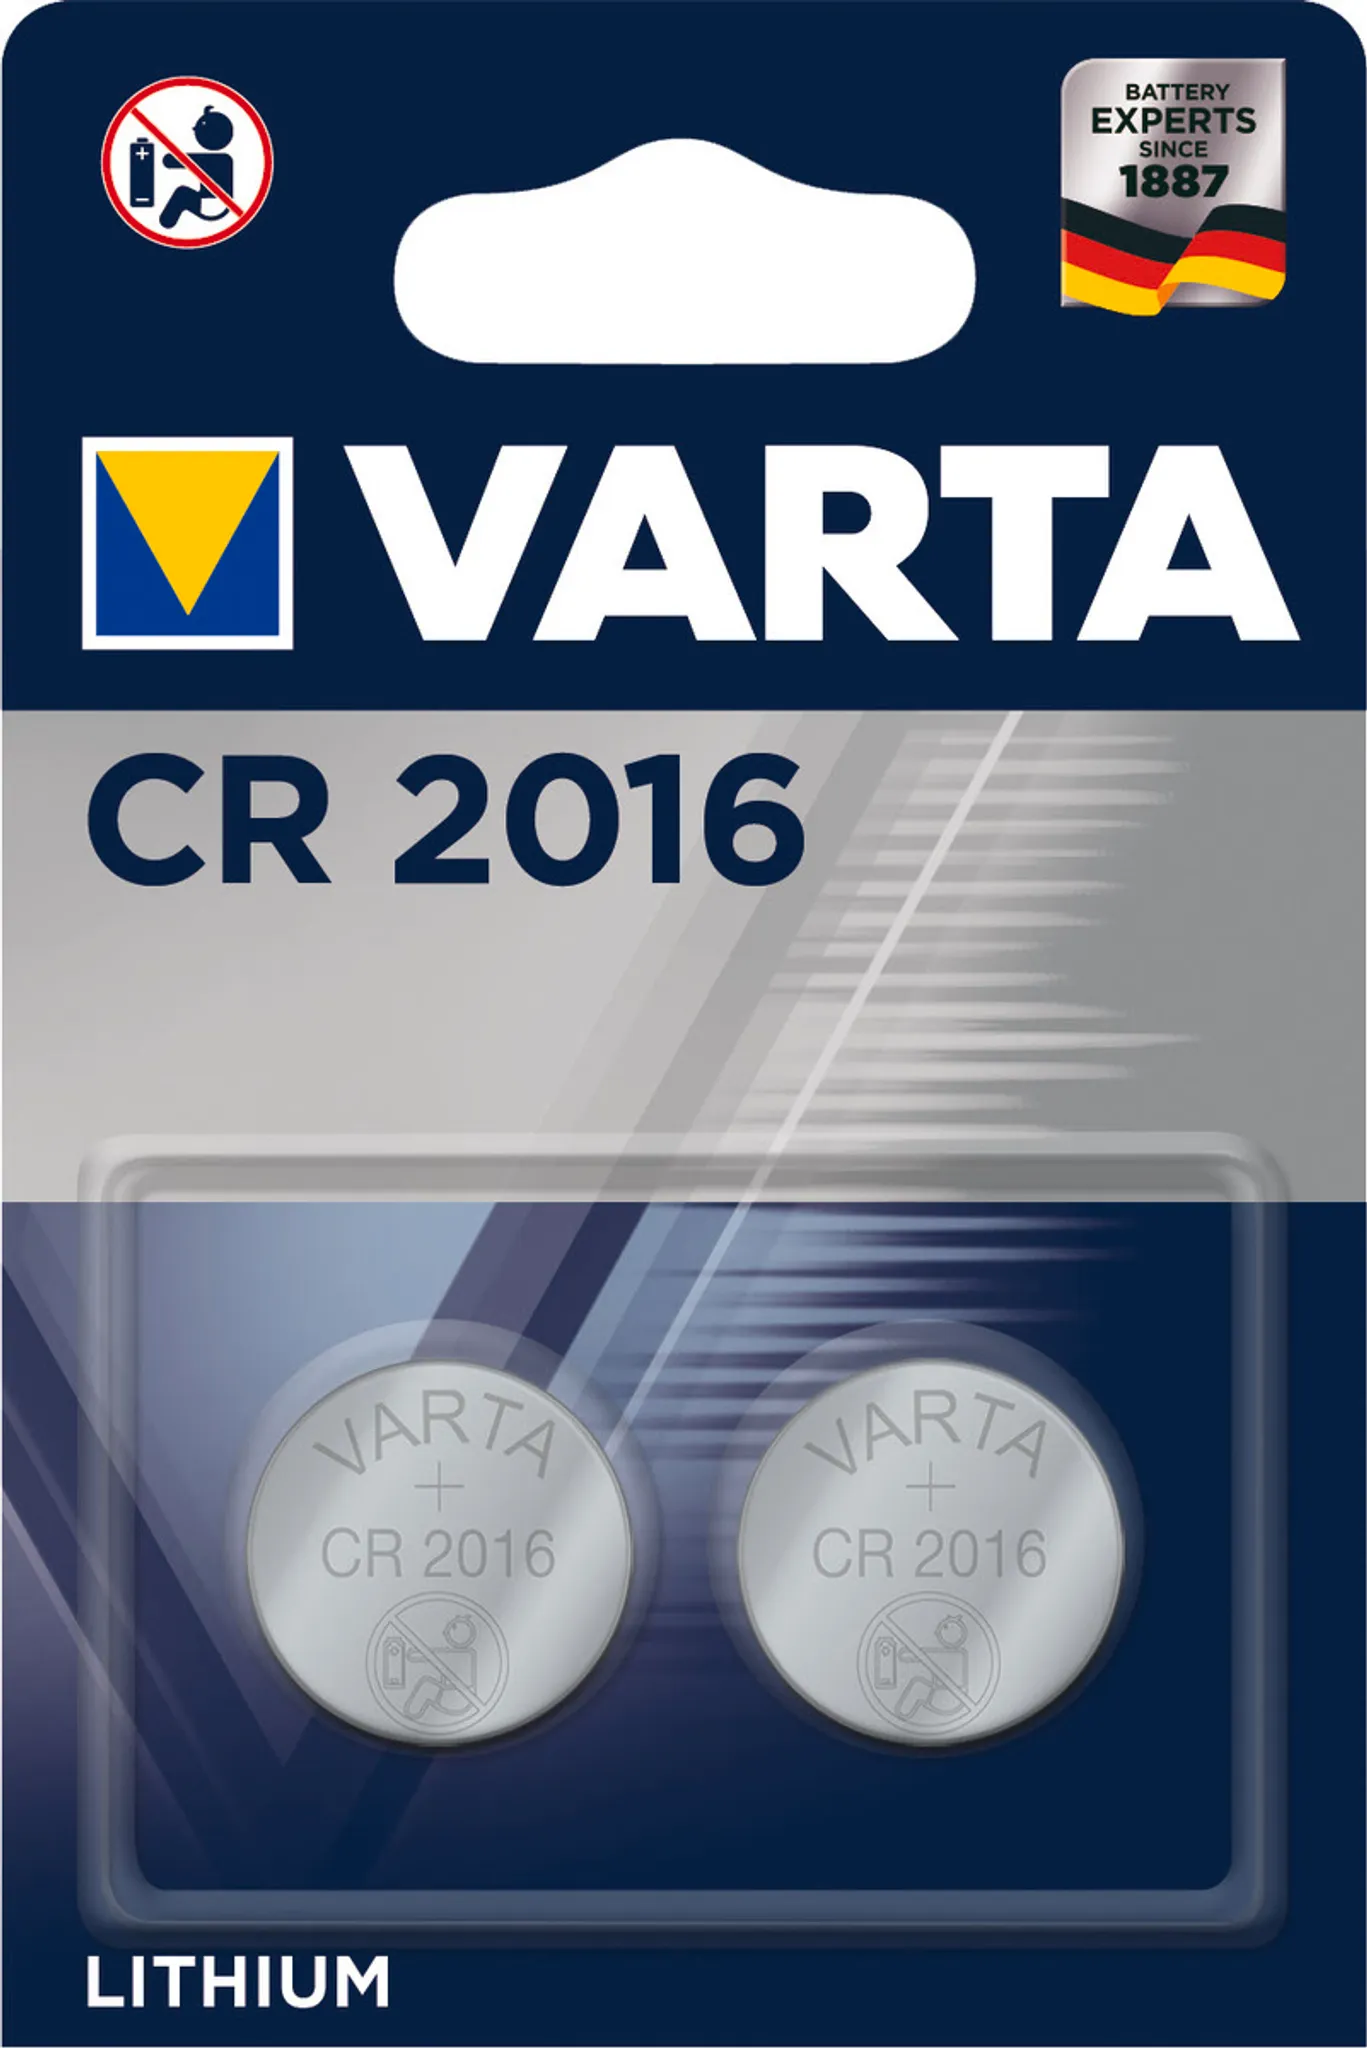 Lithium-Knopfzelle VARTA Electronics, CR 2016, 90mAh, 3V, 1er-Blister